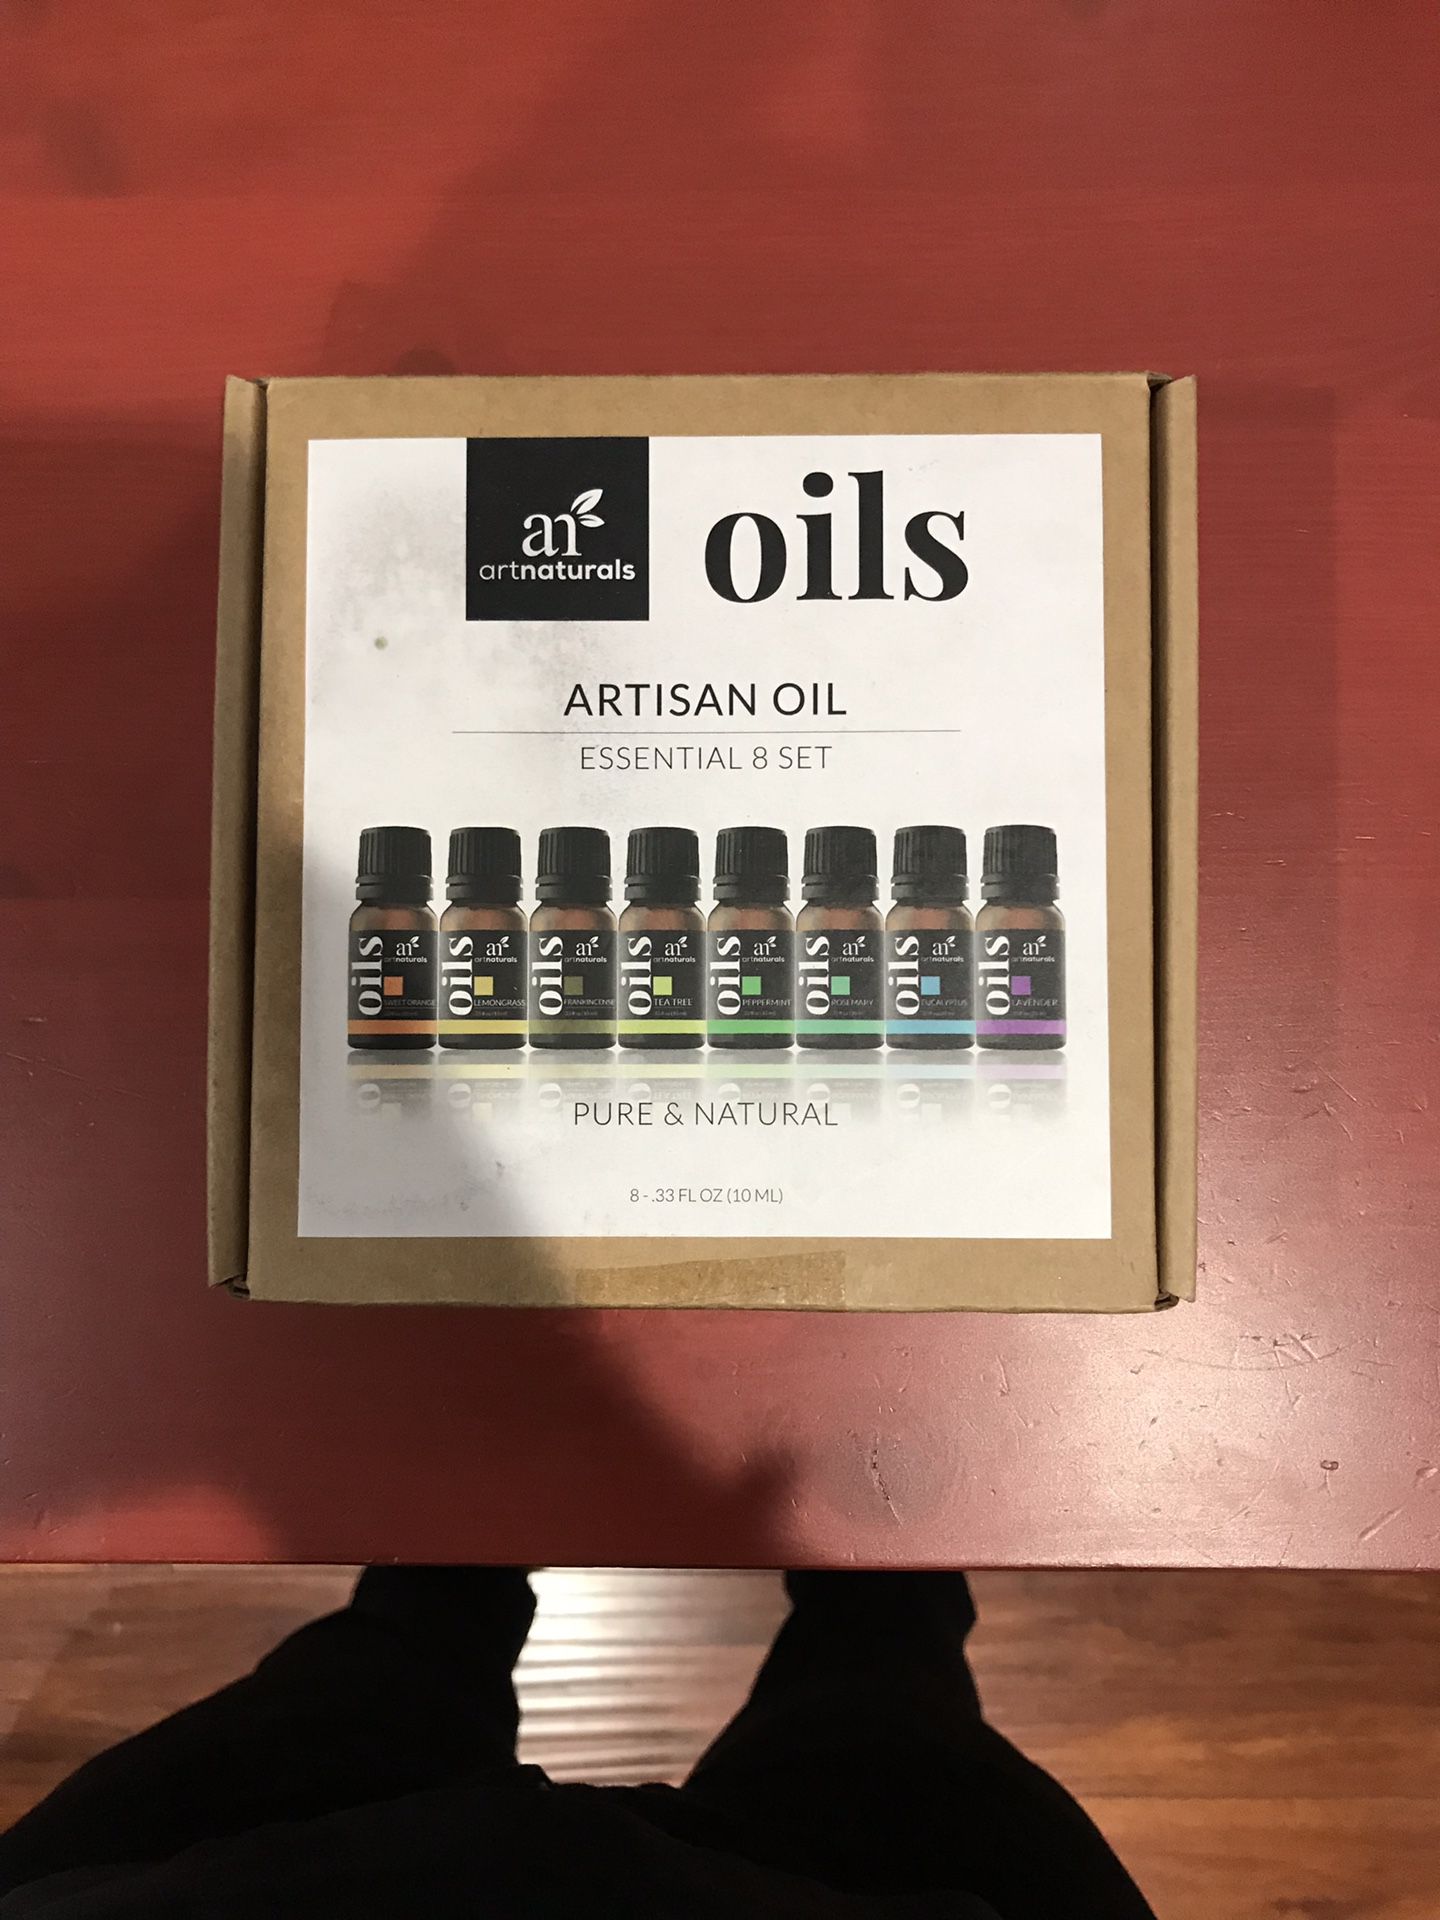 ARTNATURALS; ARTISAN OIL